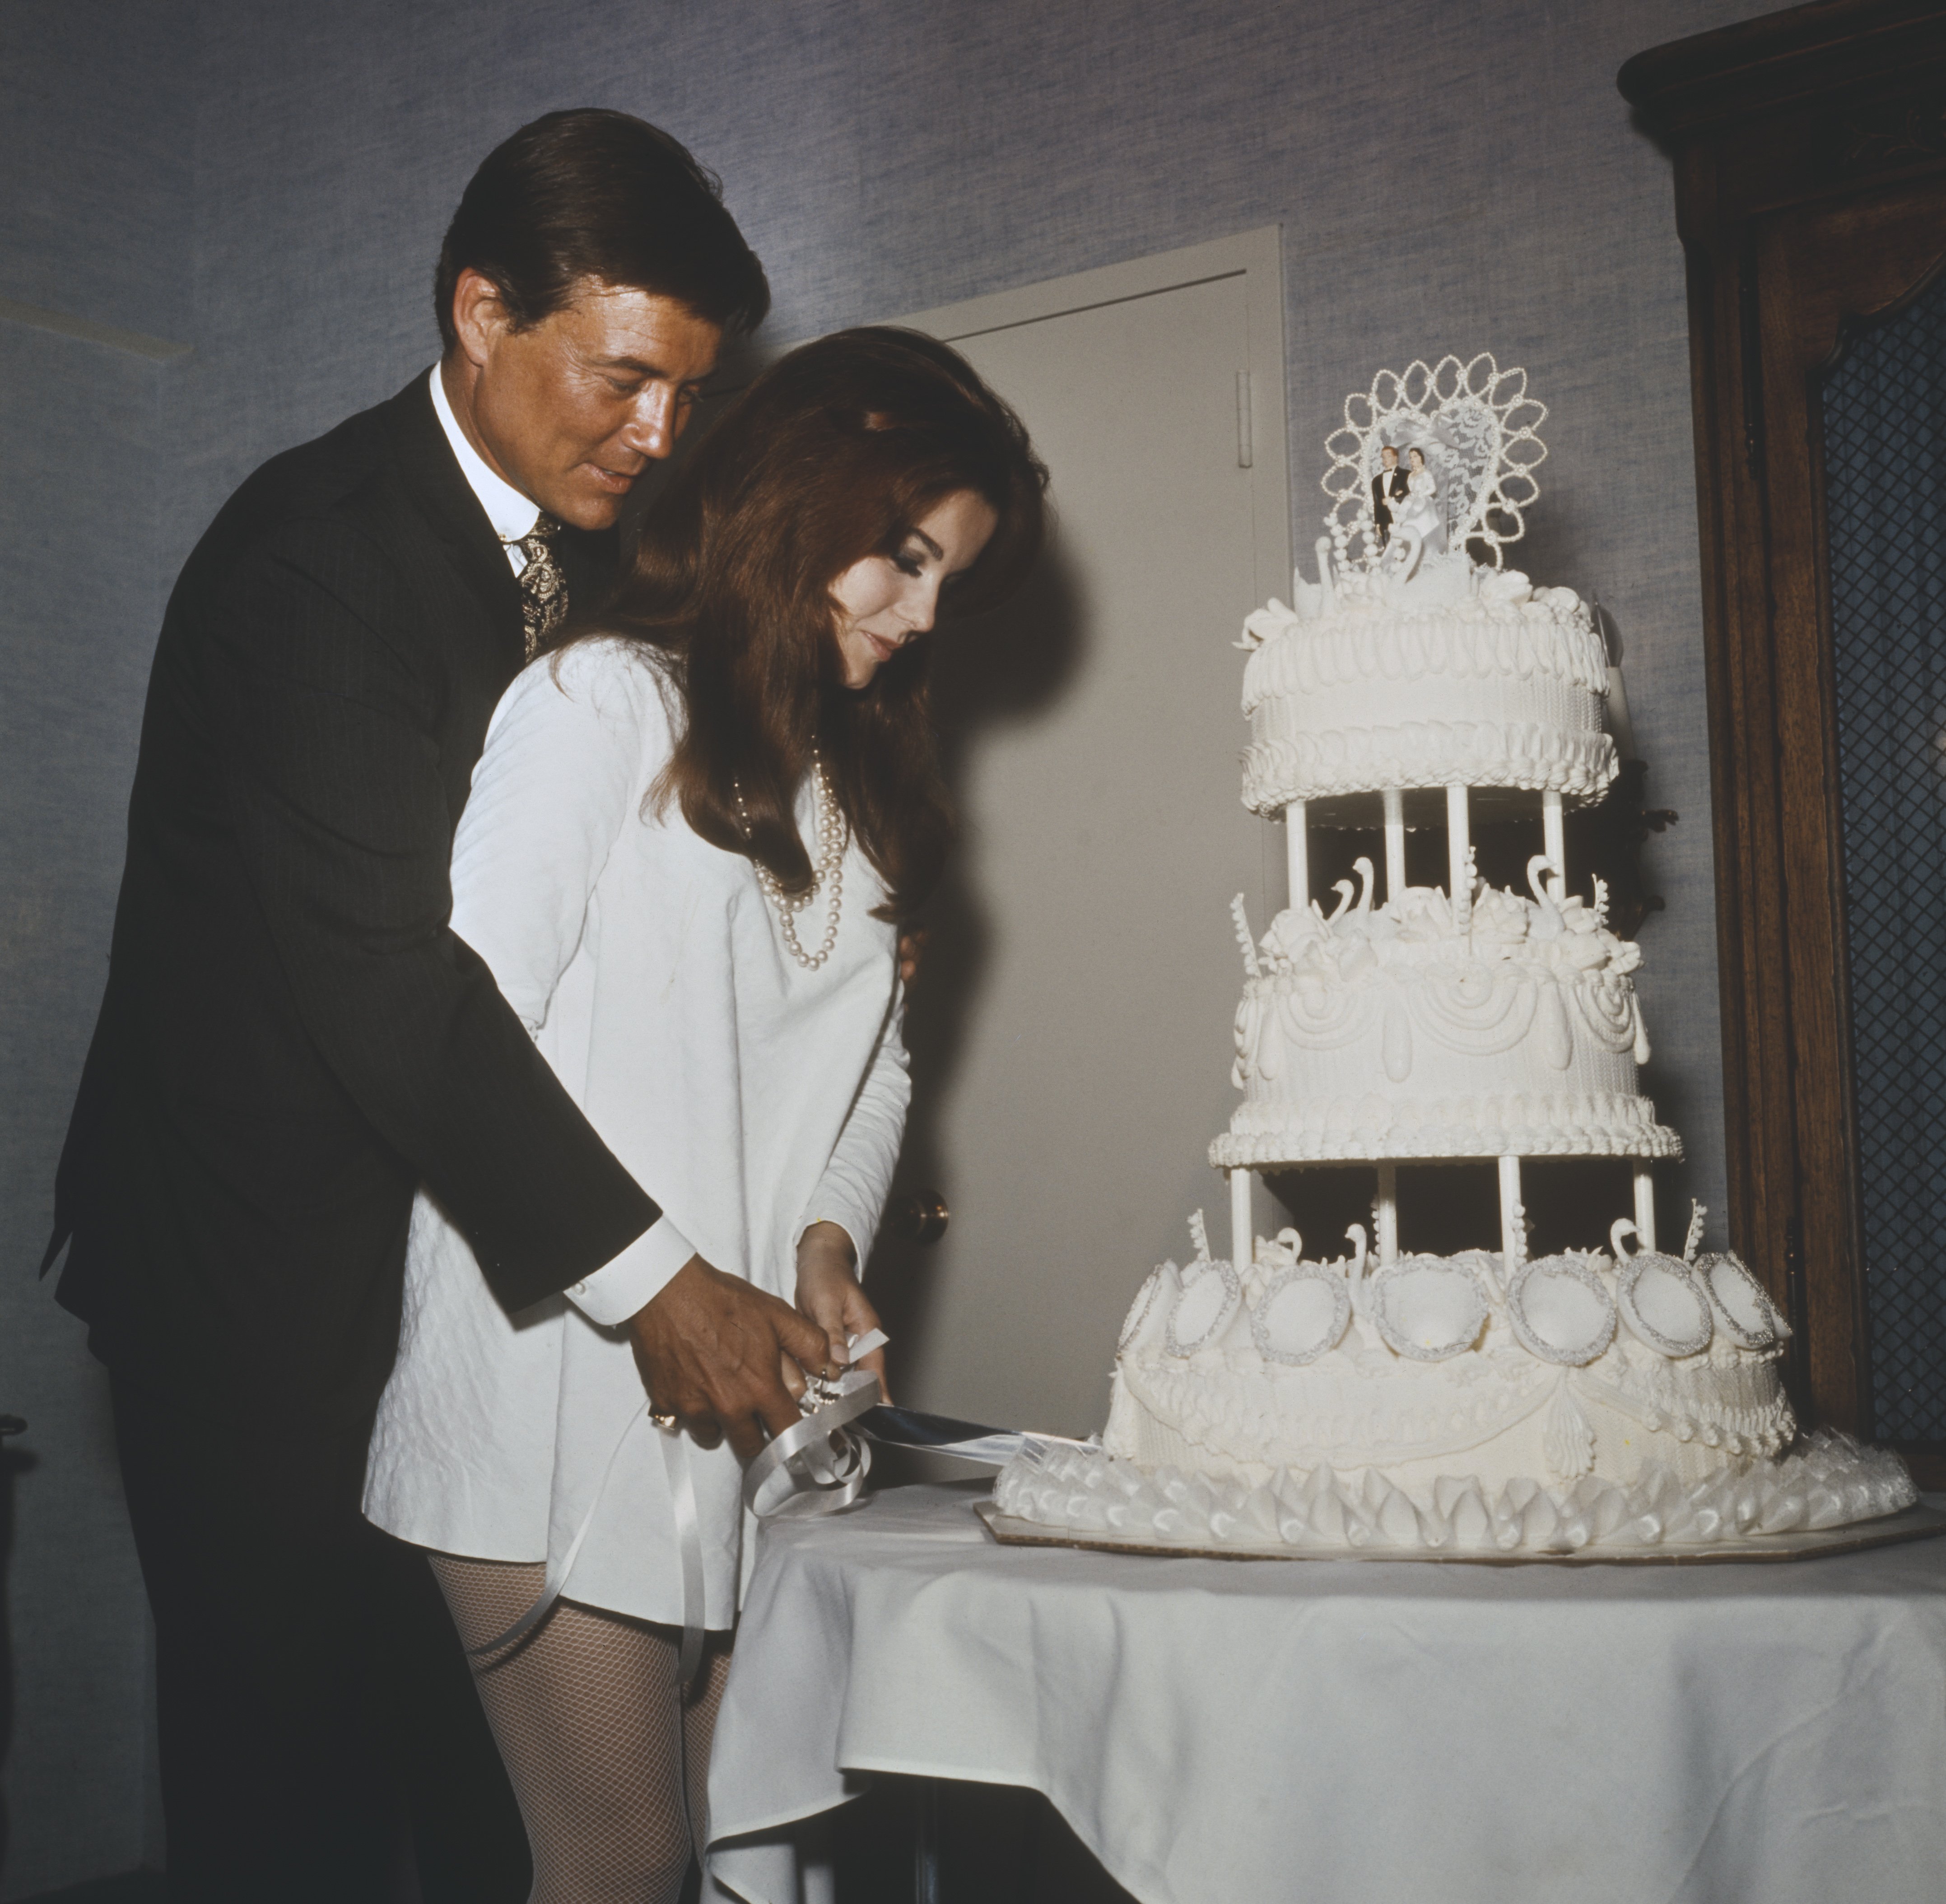 Les nouveaux mariés Roger Smith et Ann-Margret coupent leur gâteau de mariage après leurs noces à l'hôtel Riviera le 8 mai 1967 à Las Vegas. | Source : Getty Images